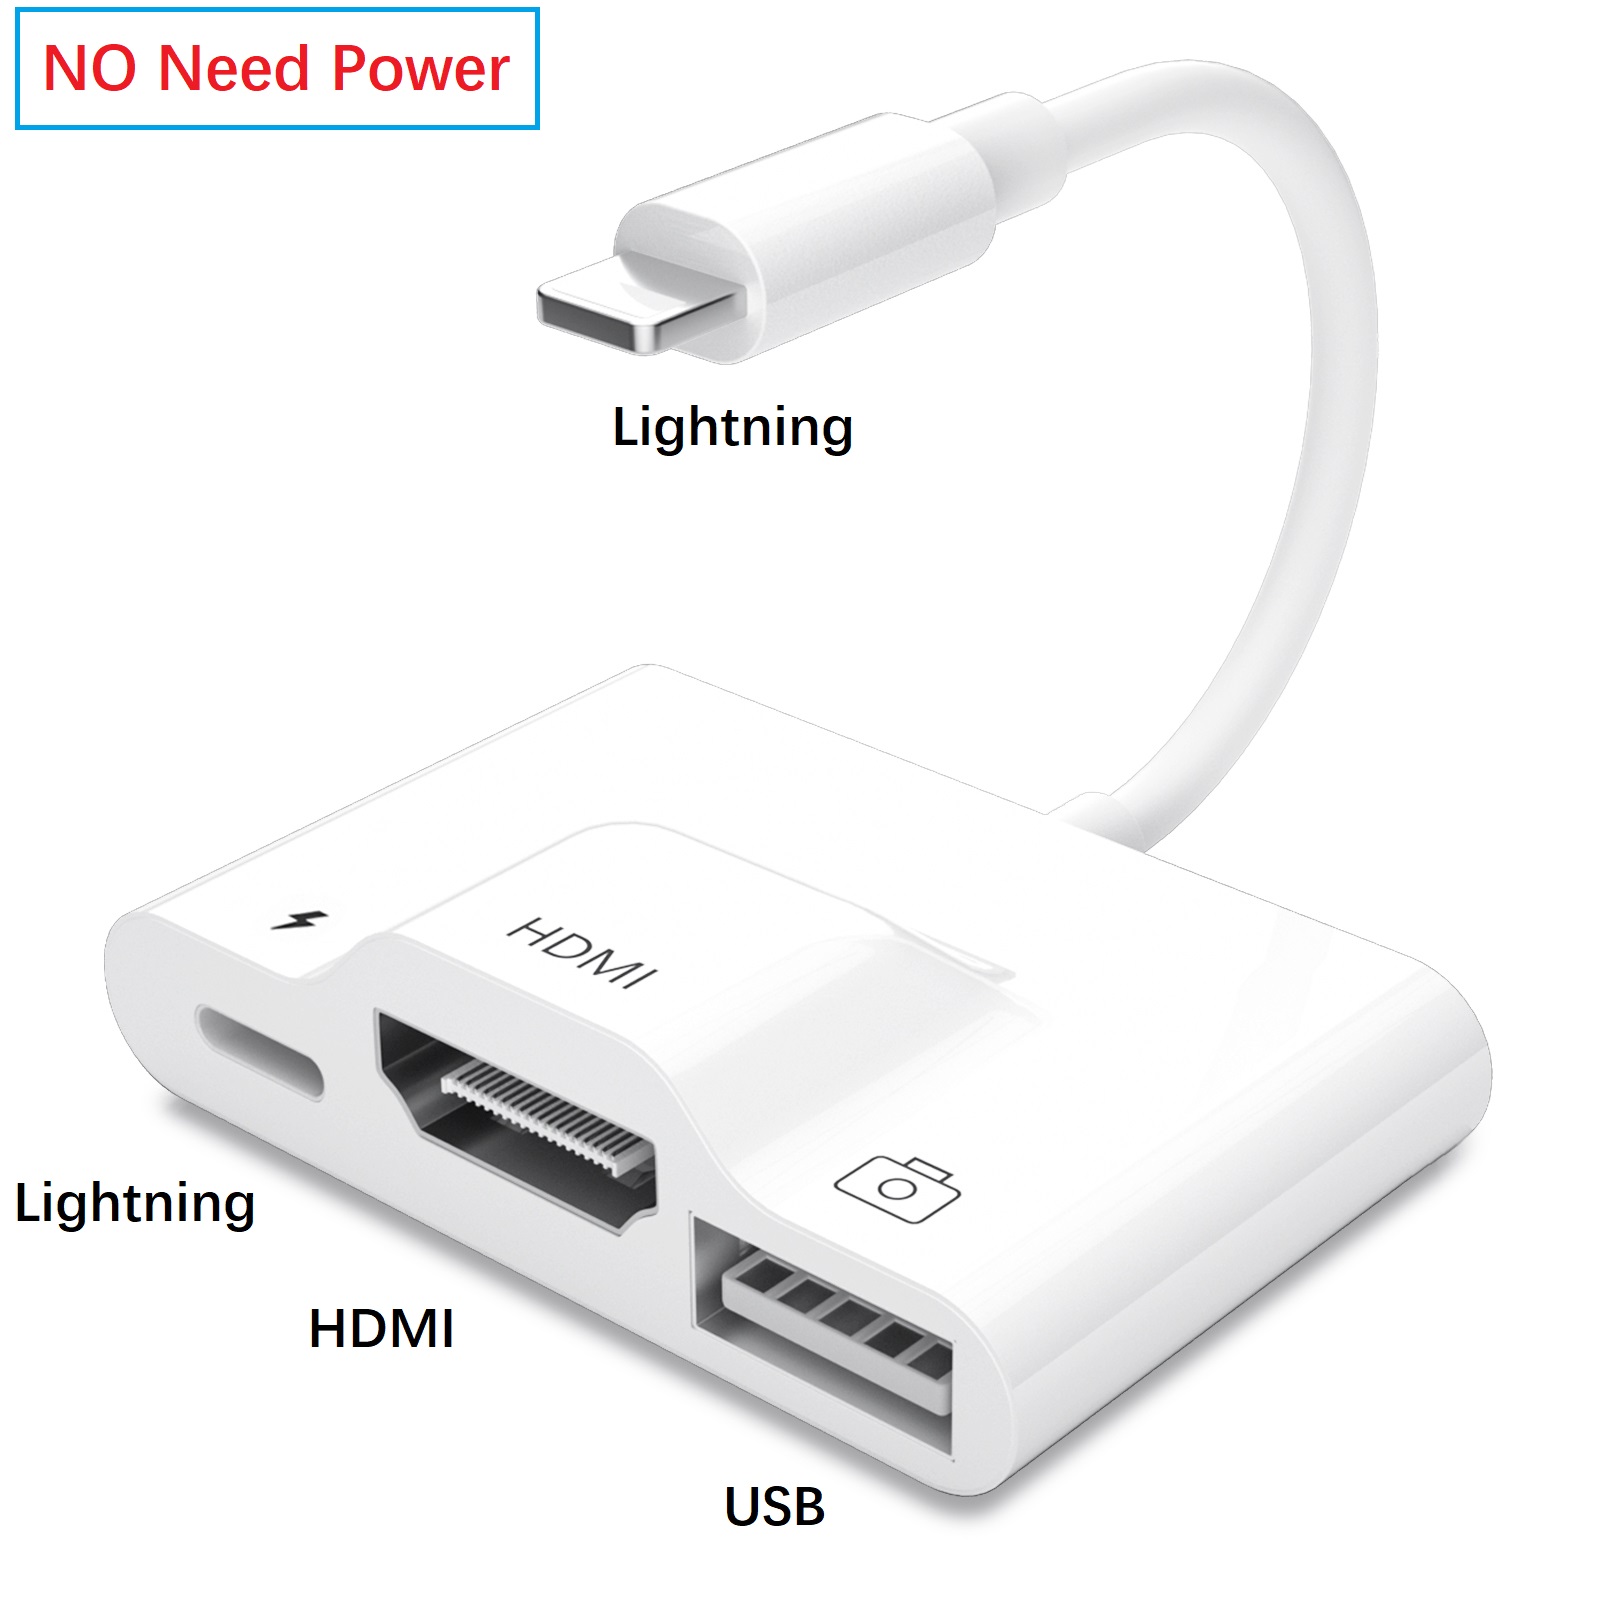 US$ 19.99 - Meenova Lightning to HDMI Digital AV Adapter, [No Need